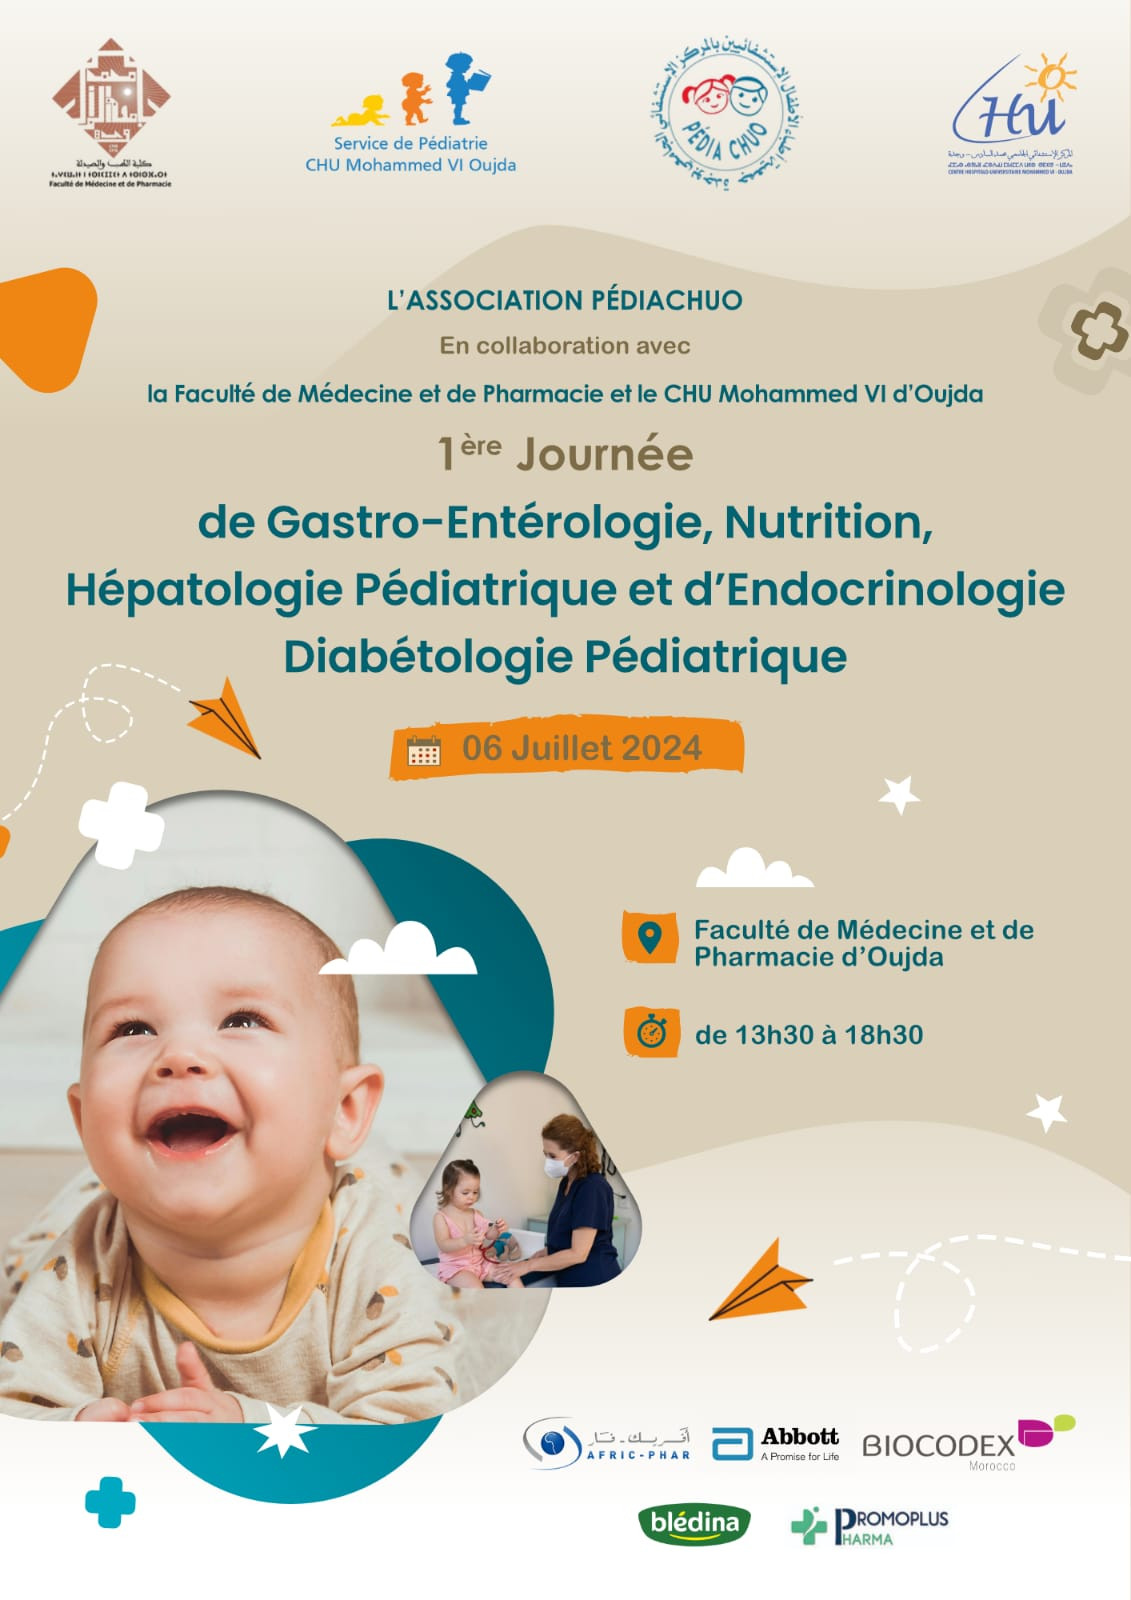 1ère Journée de Gastro-Entérologie, Nutrition, Hépatologie Pédiatrique et d'Endocrinologie-Diabétologie Pédiatrique